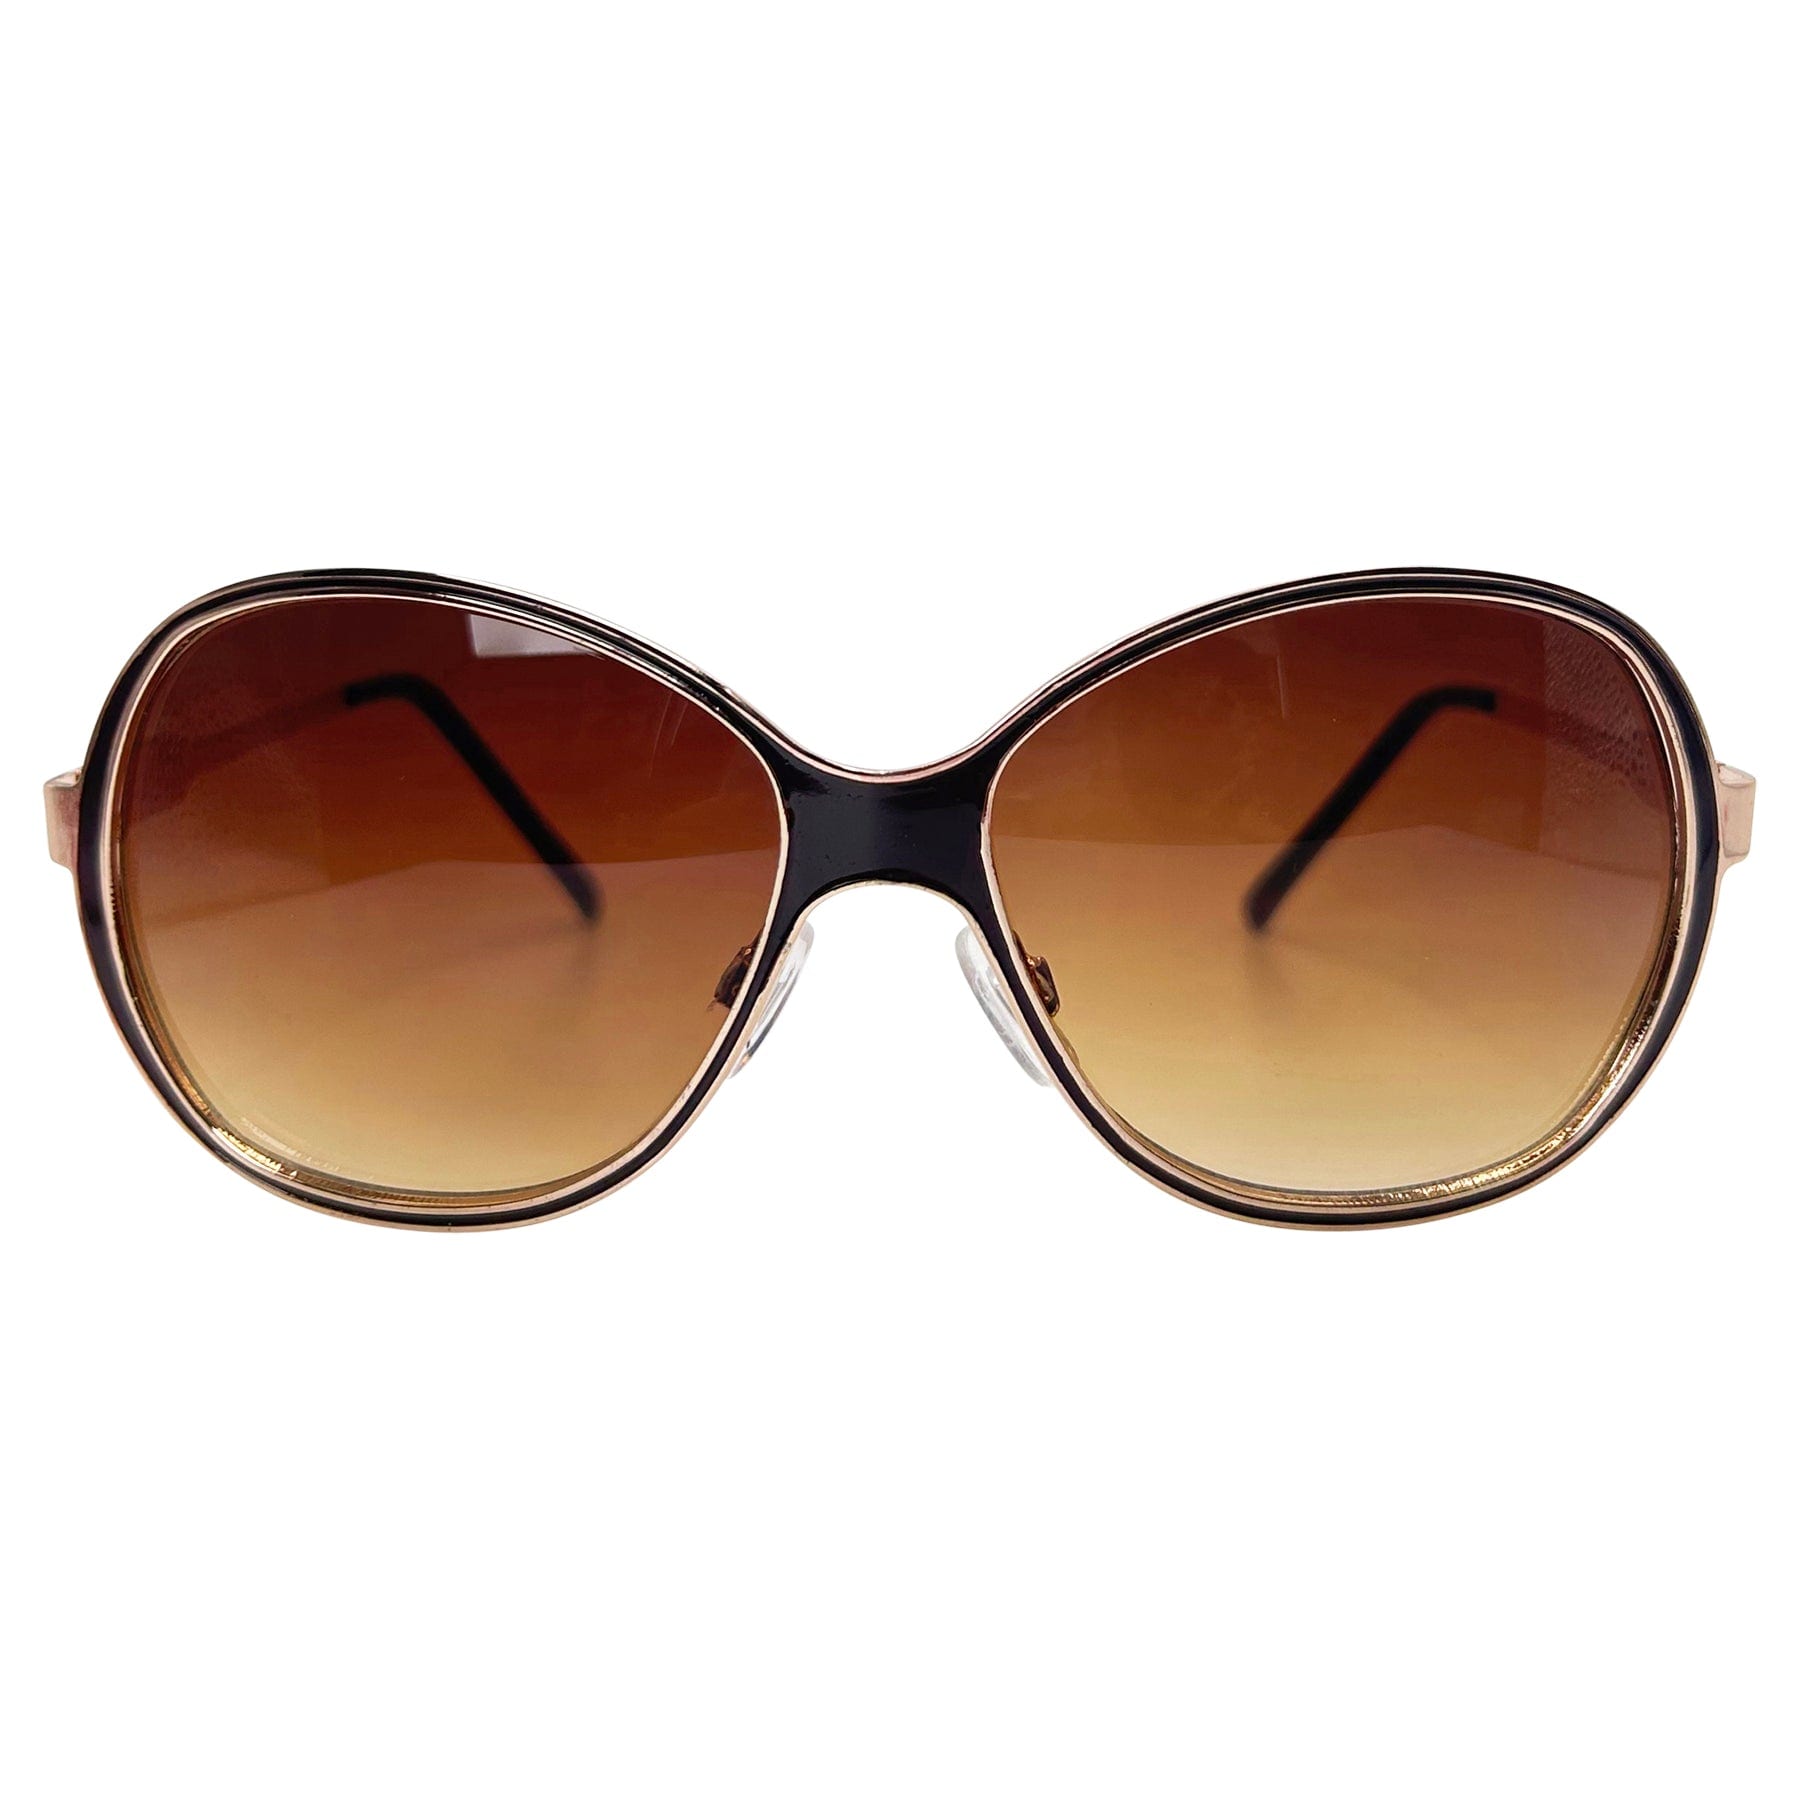 boho sleaze chic retro sunglasses with a round metal frame